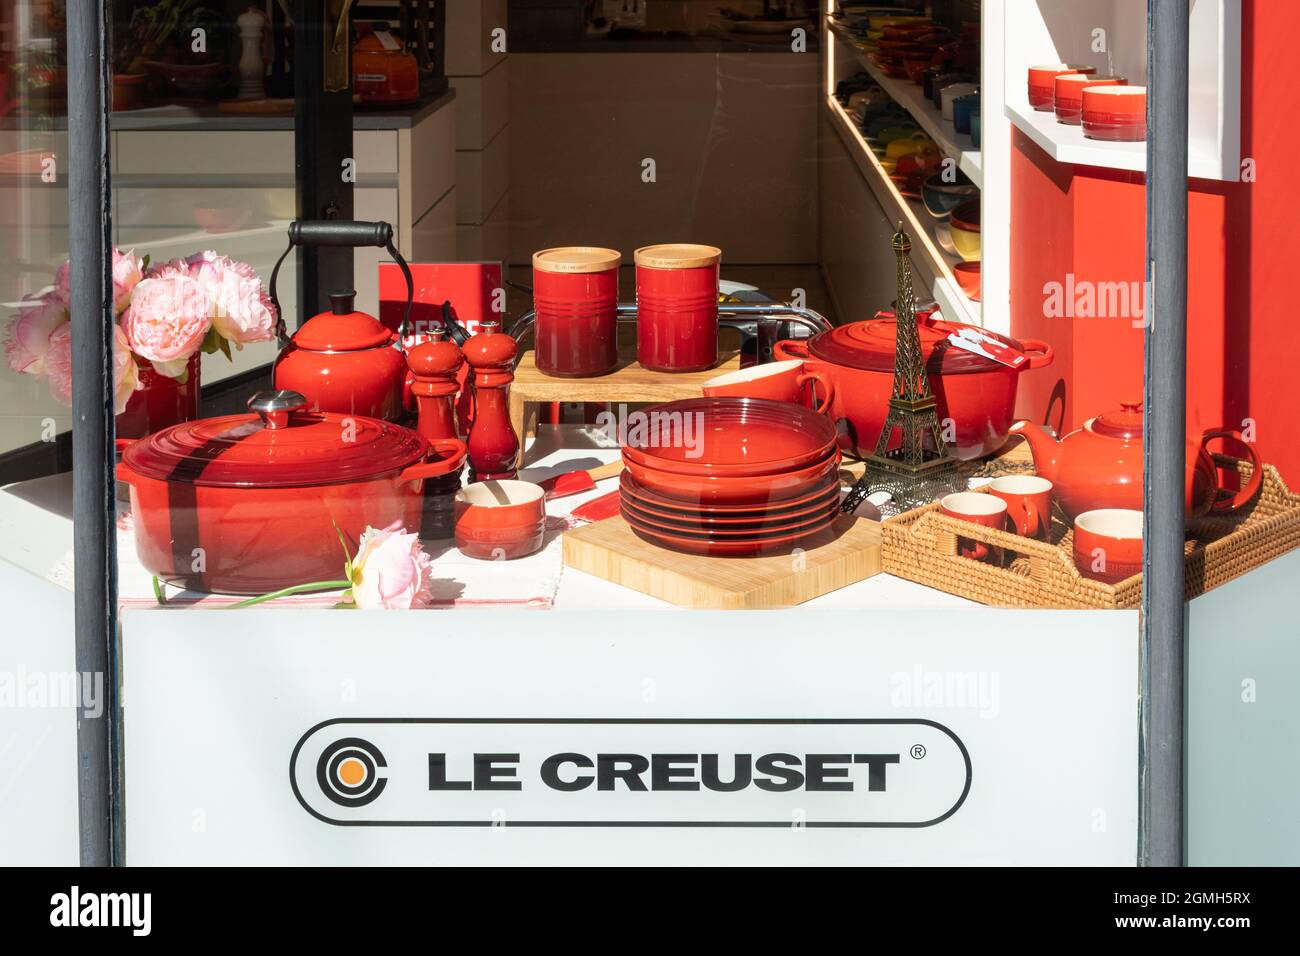 Le Creuset vetrina in negozio o negozio davanti, rivenditore francese di utensili da cucina, meglio noto per le tovaglie smaltate colorate in ghisa, Regno Unito Foto Stock